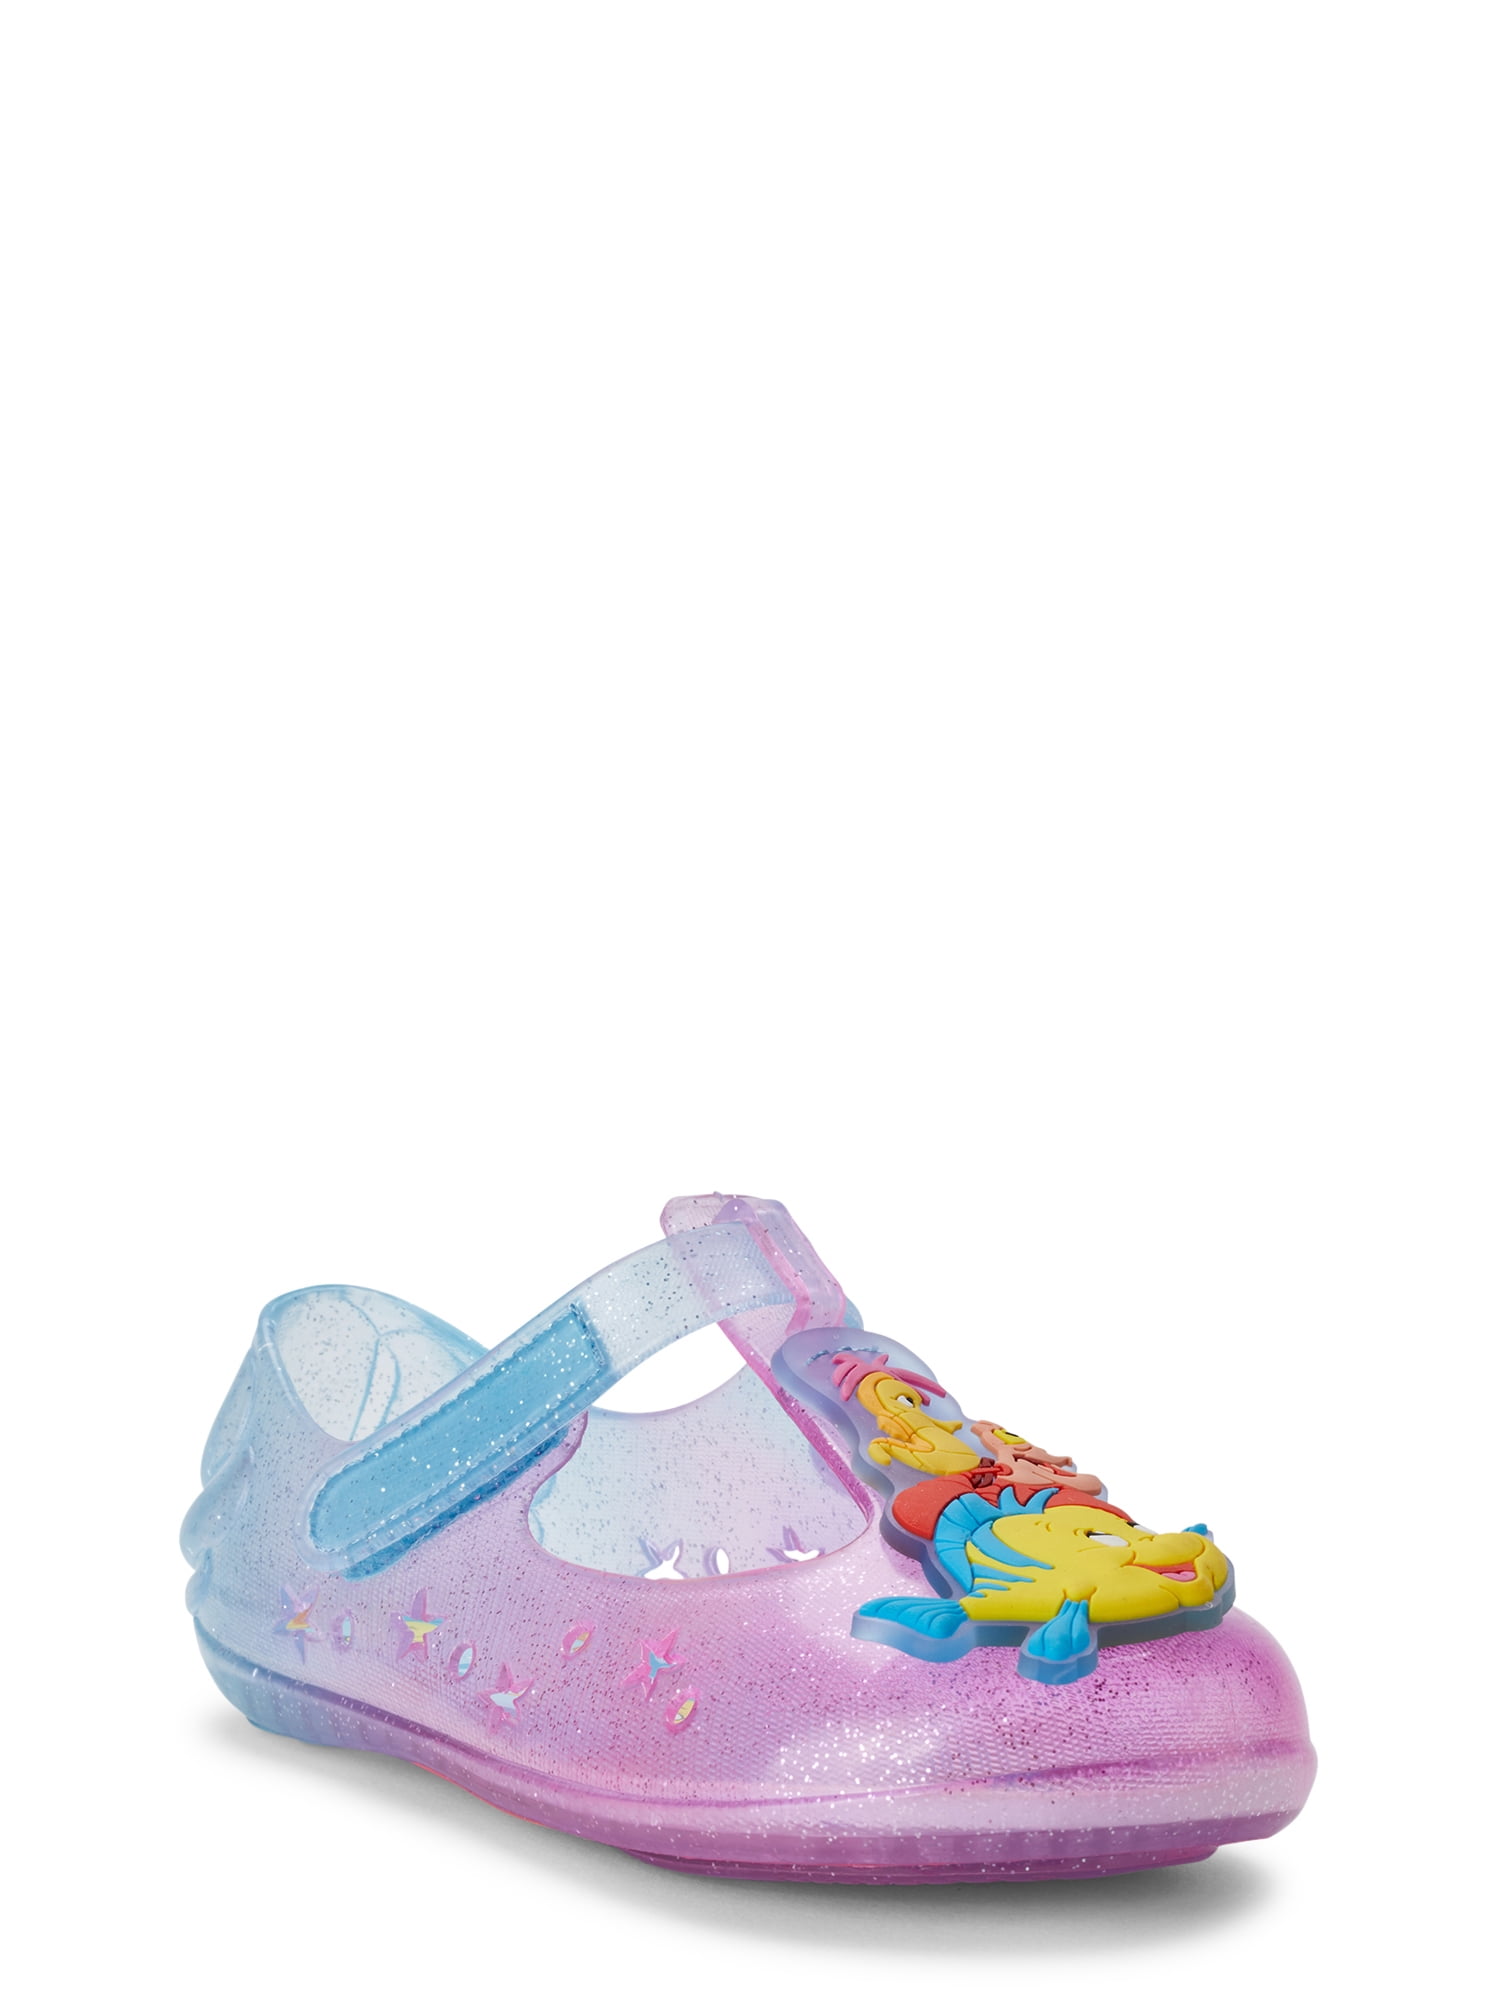 mermaid baby shoes